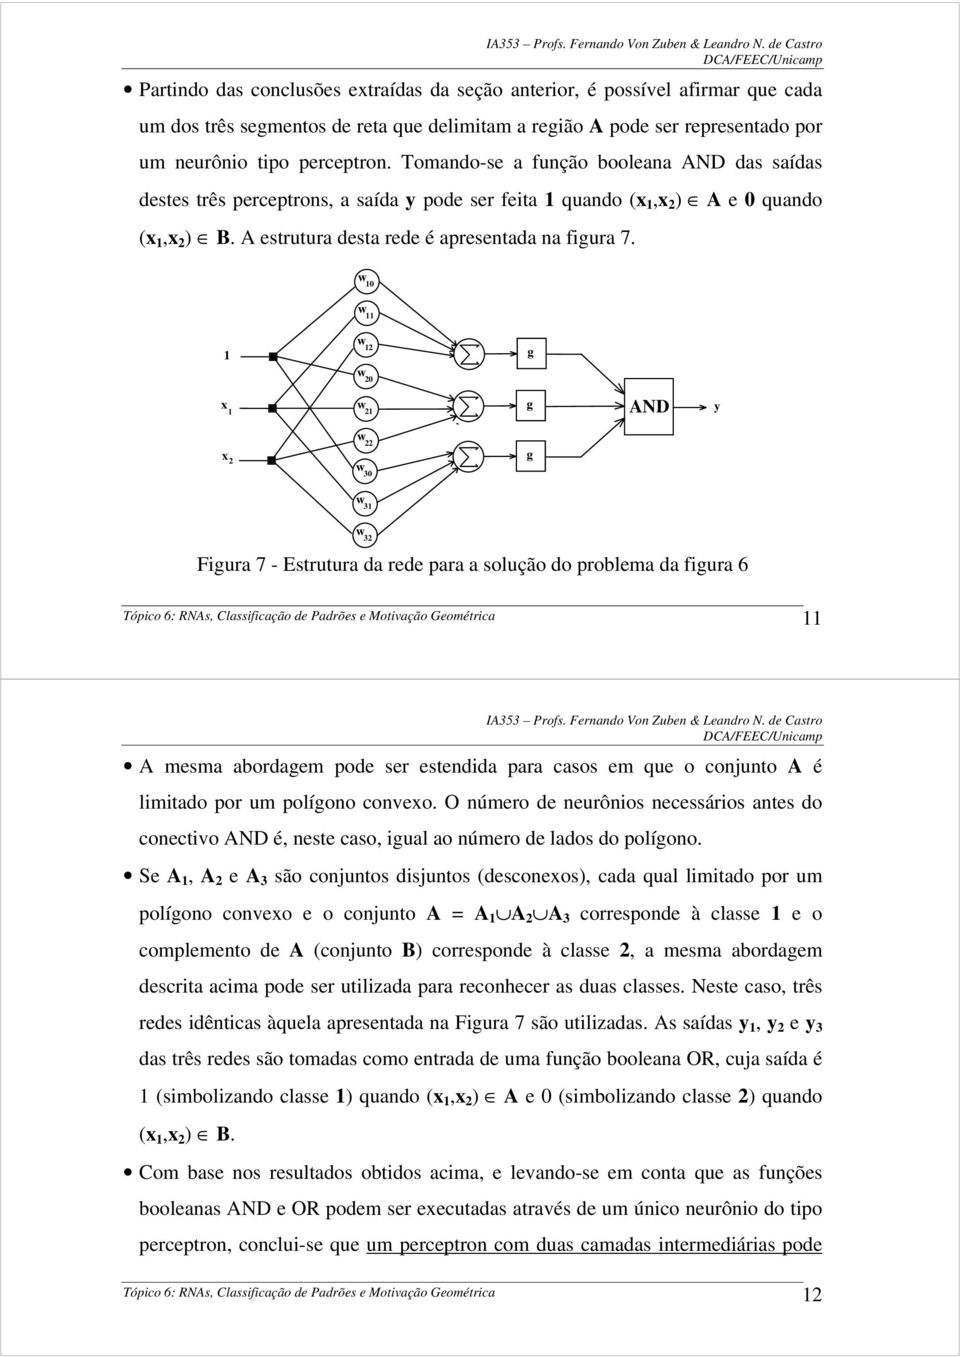 0 g 0 g AND y 30 g 3 3 Figura 7 - Estrutura da rede para a solução do problema da figura 6 Tópico 6: RNAs, Classificação de Padrões e Motiação Geométrica A mesma abordagem pode ser estendida para